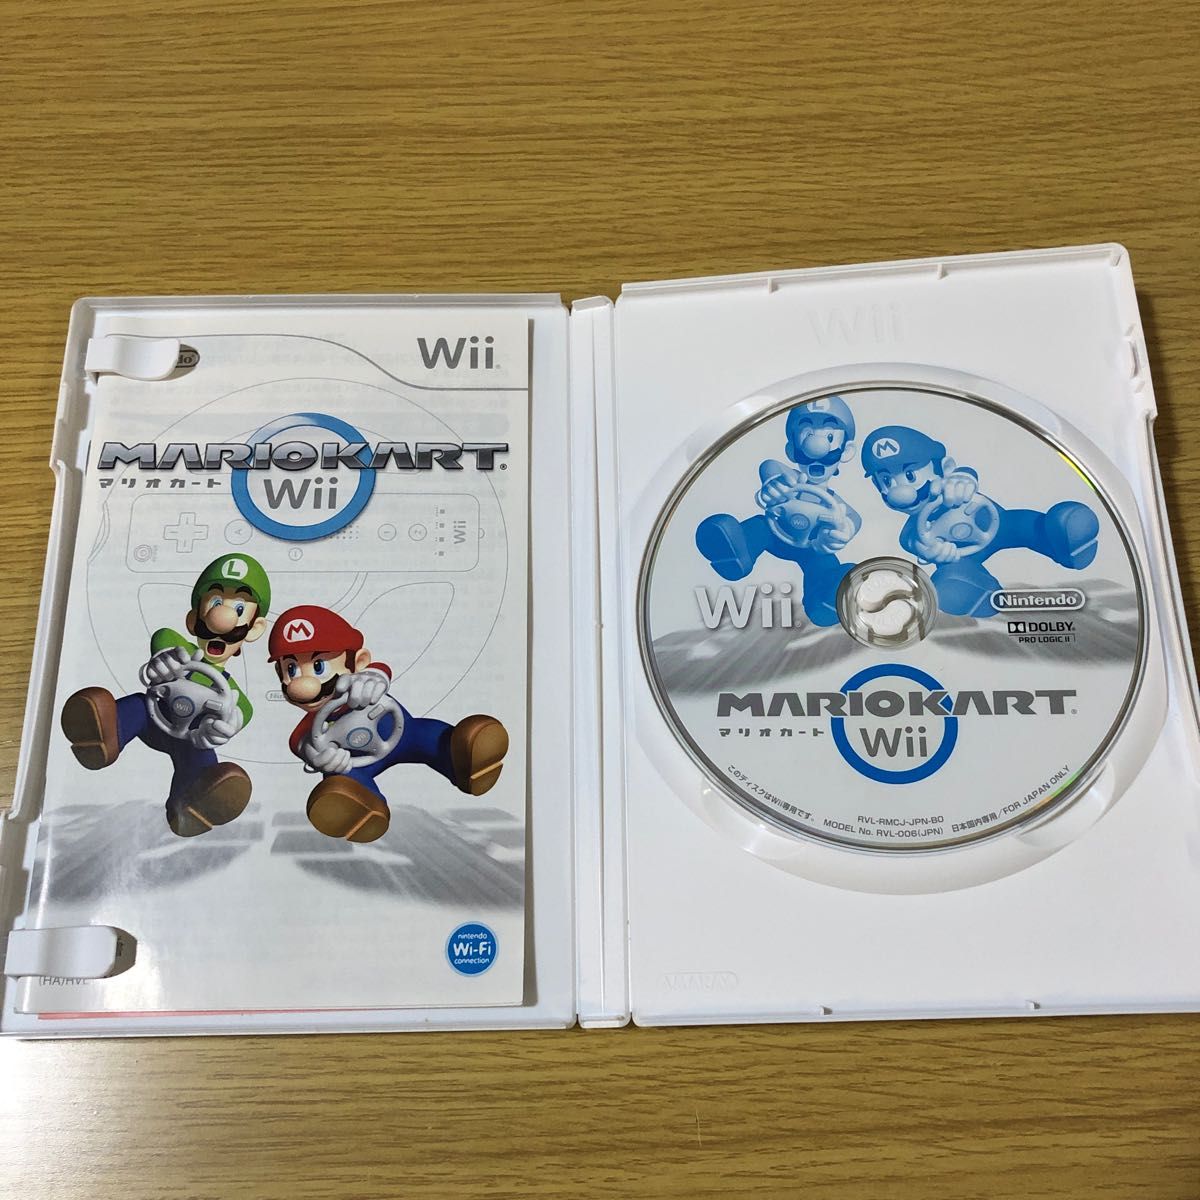 マリオパーティ8 Wii、マリオカート Wii